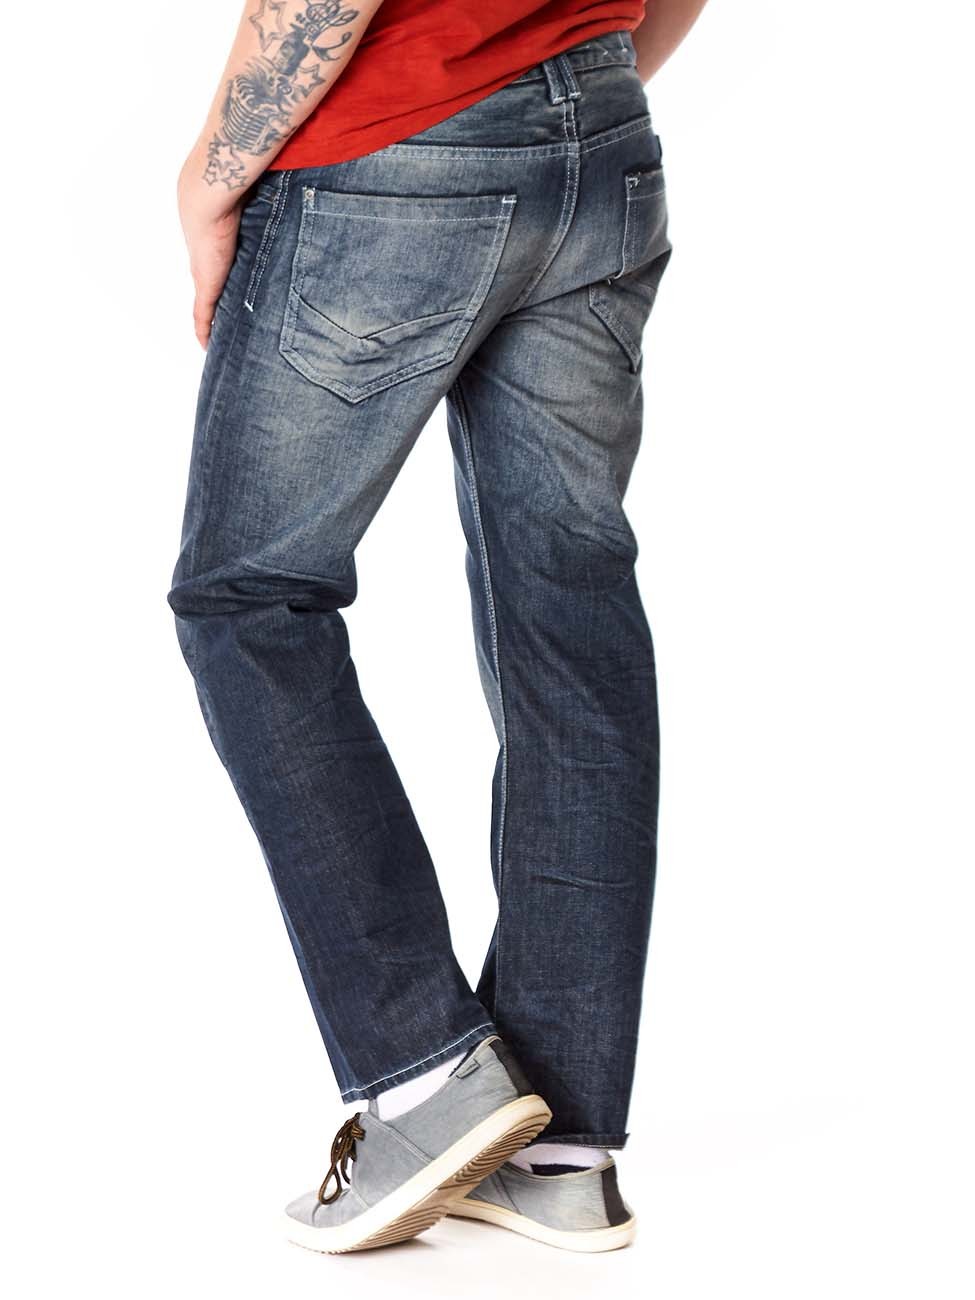 Мужские джинсы бренды